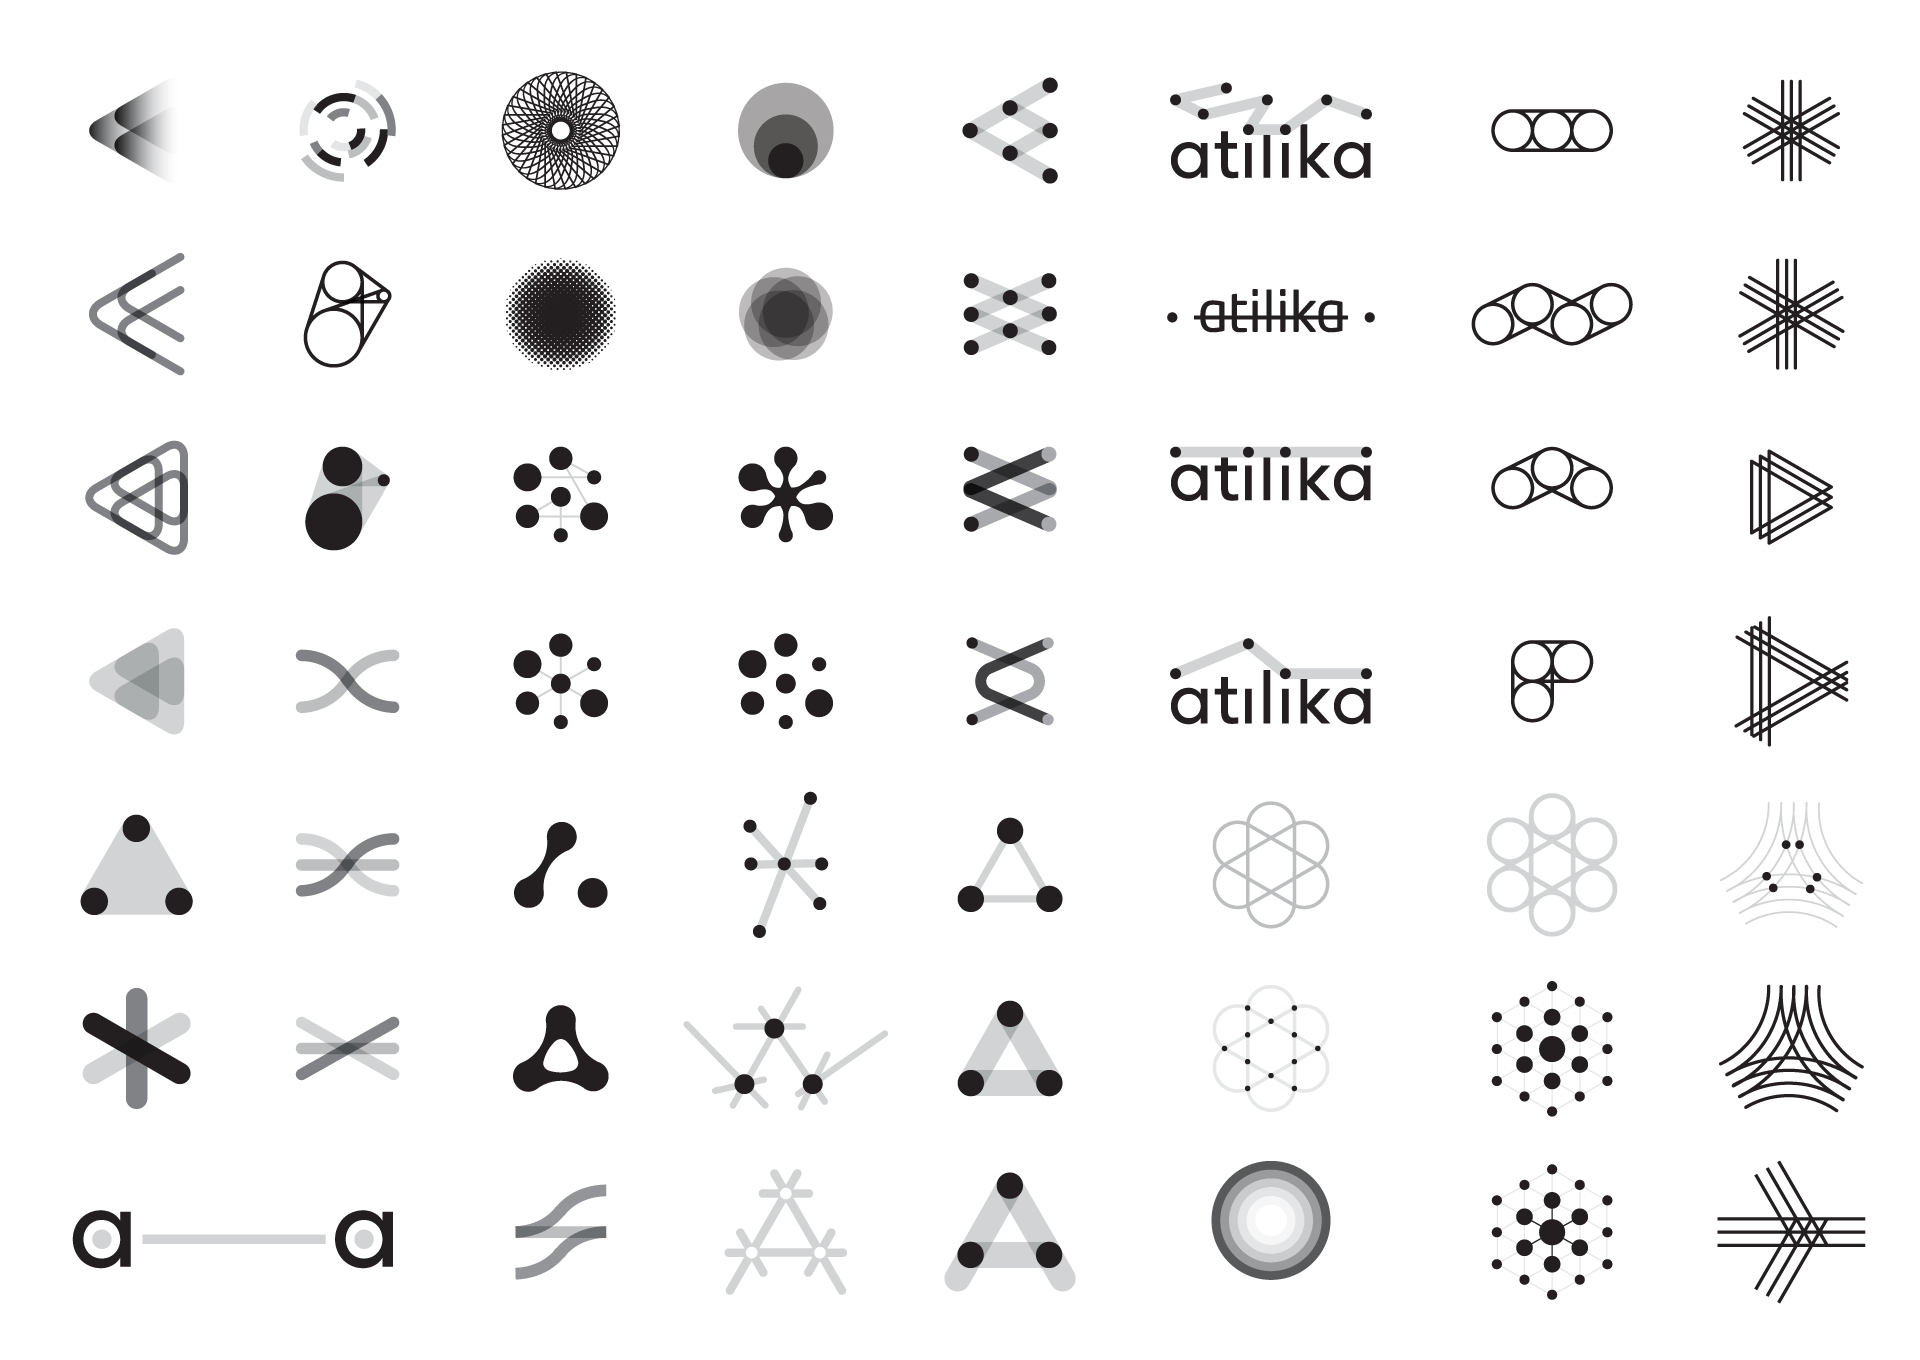 Atilika Tokyo Japan - ai artificial intelligence & language processing - Logo Sketches